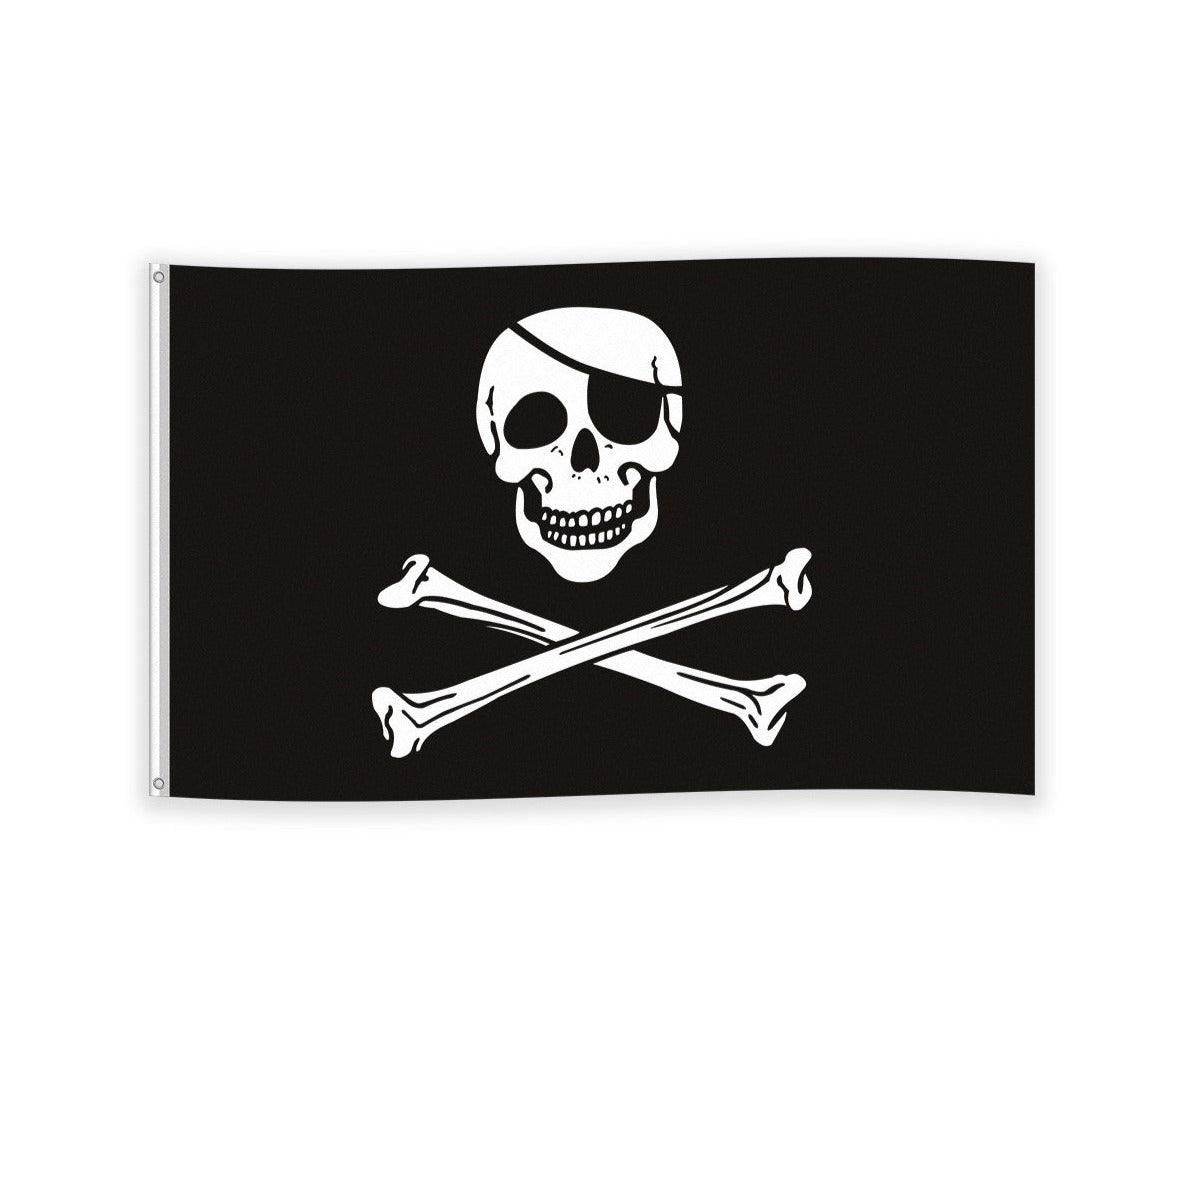 Pirate skull flag